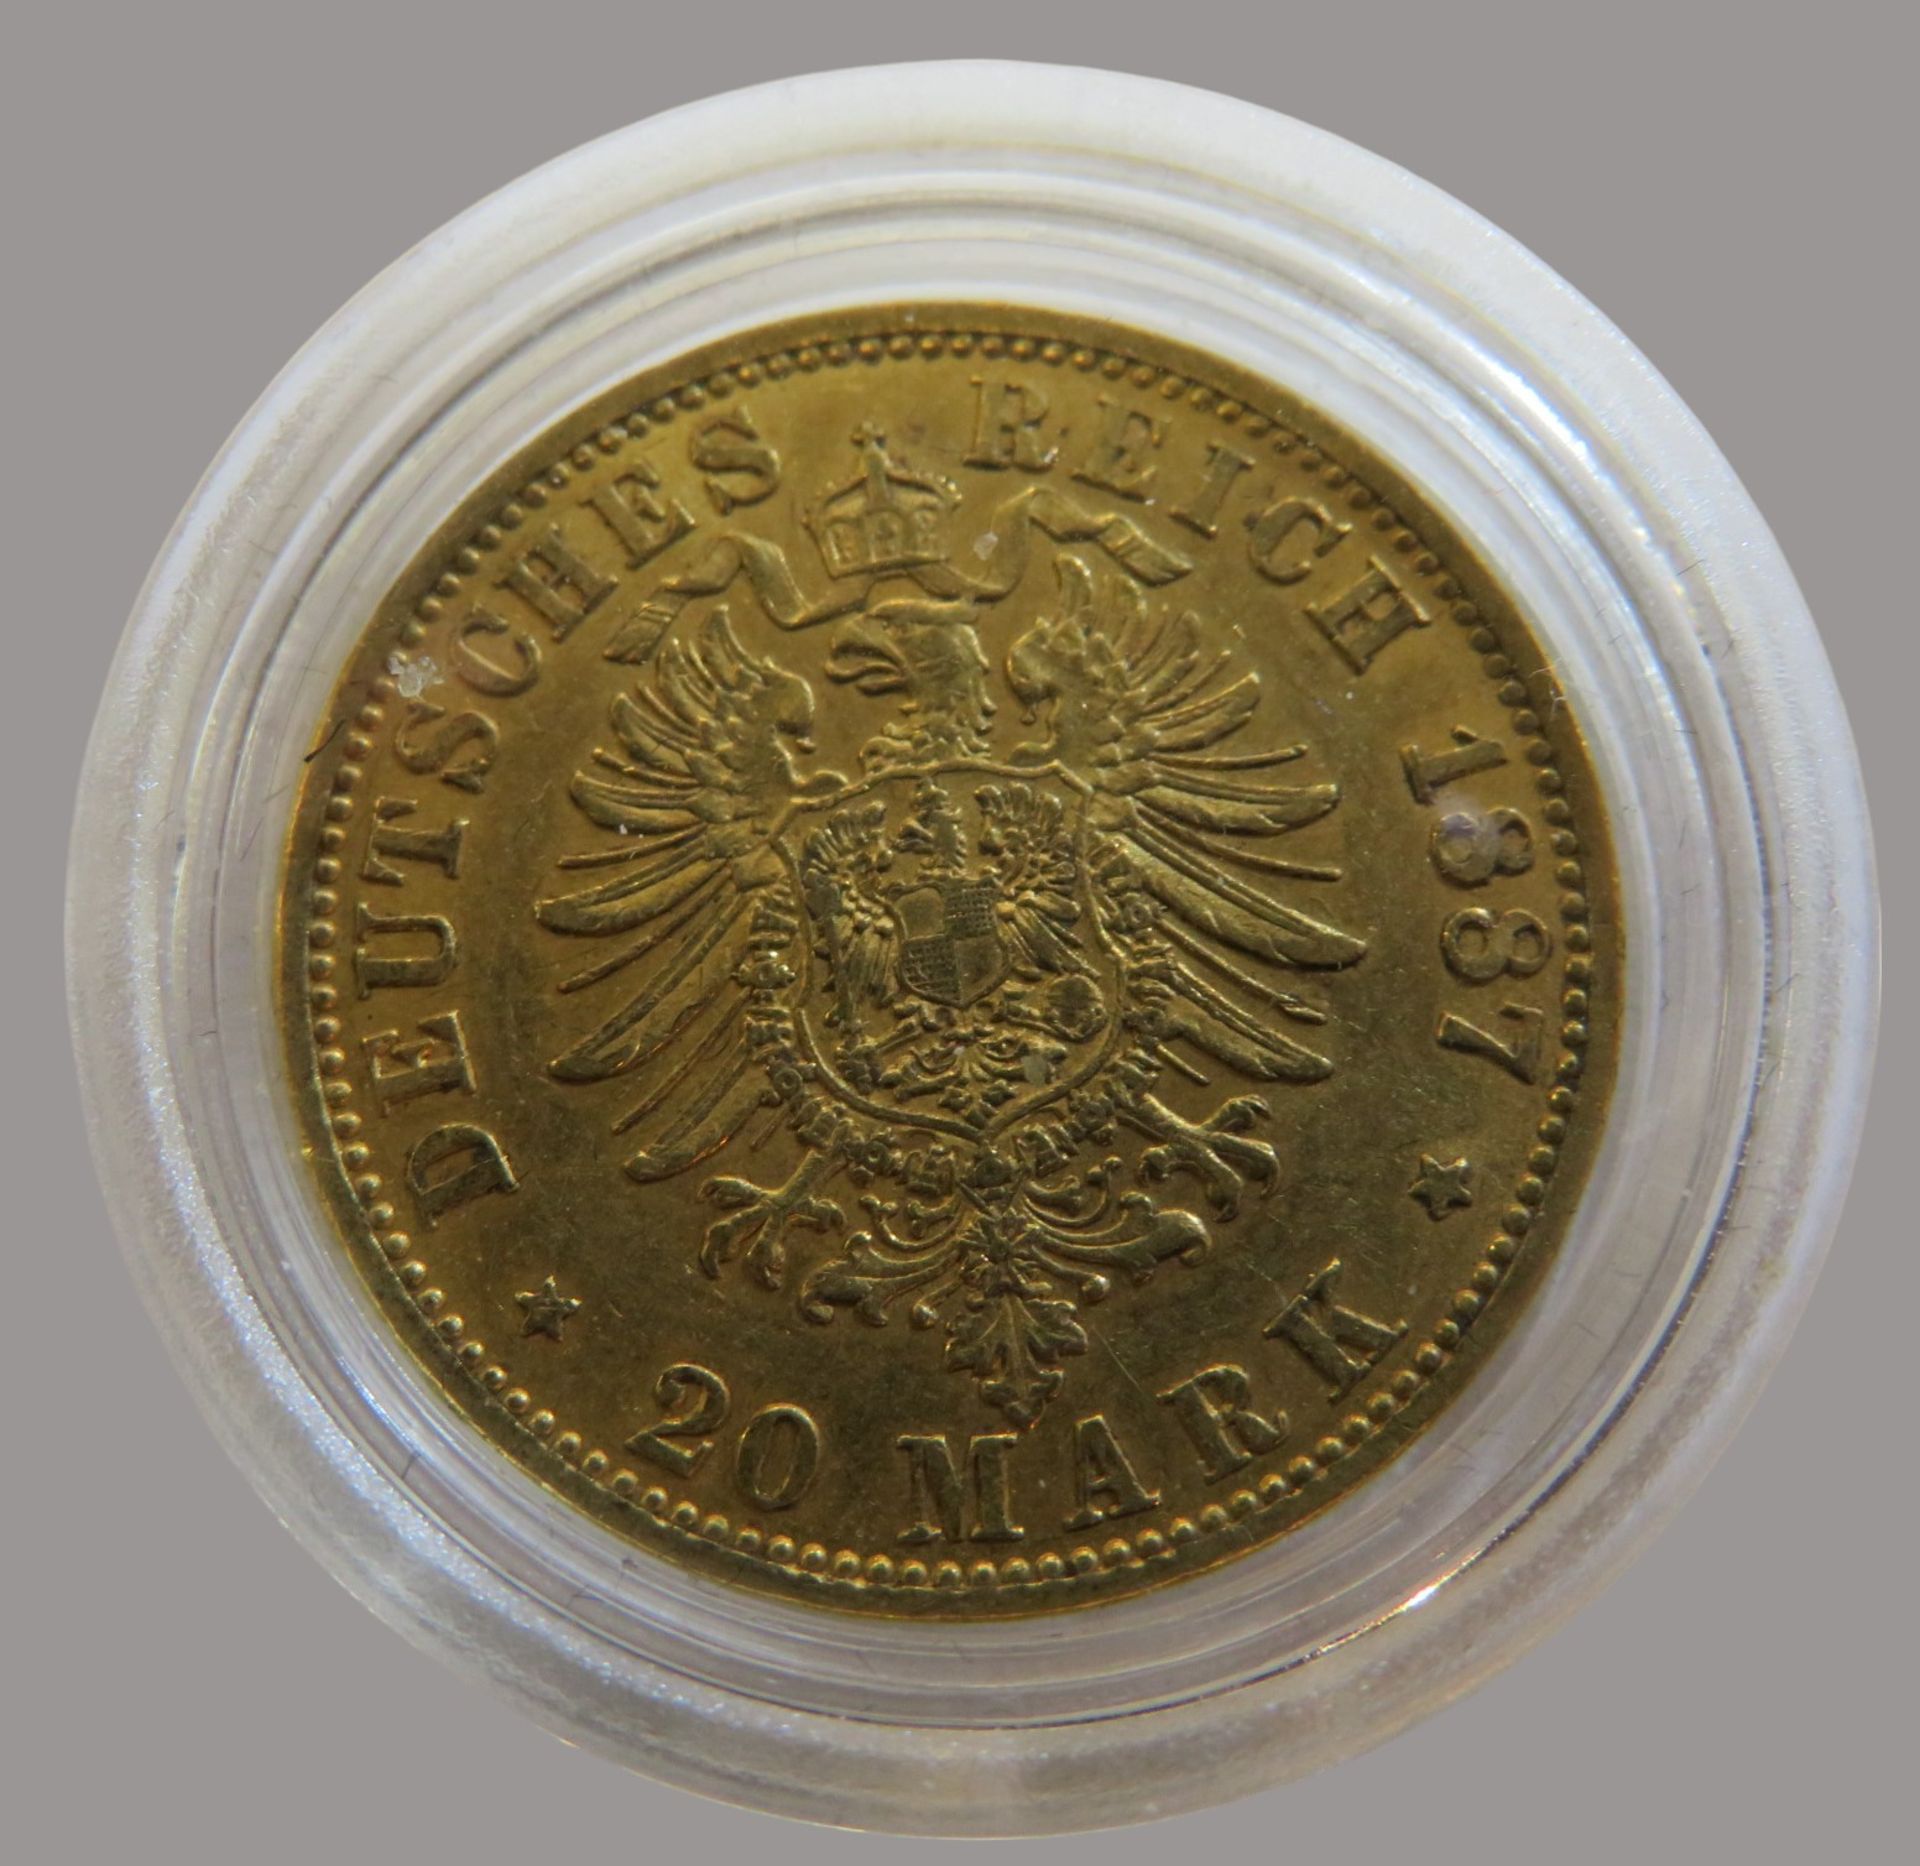 Goldmünze, 20 Mark, Wilhelm I. König von Preussen, 1887A, Gold 900/000, 7,96 g, J 246, Erhaltungszu - Image 2 of 2